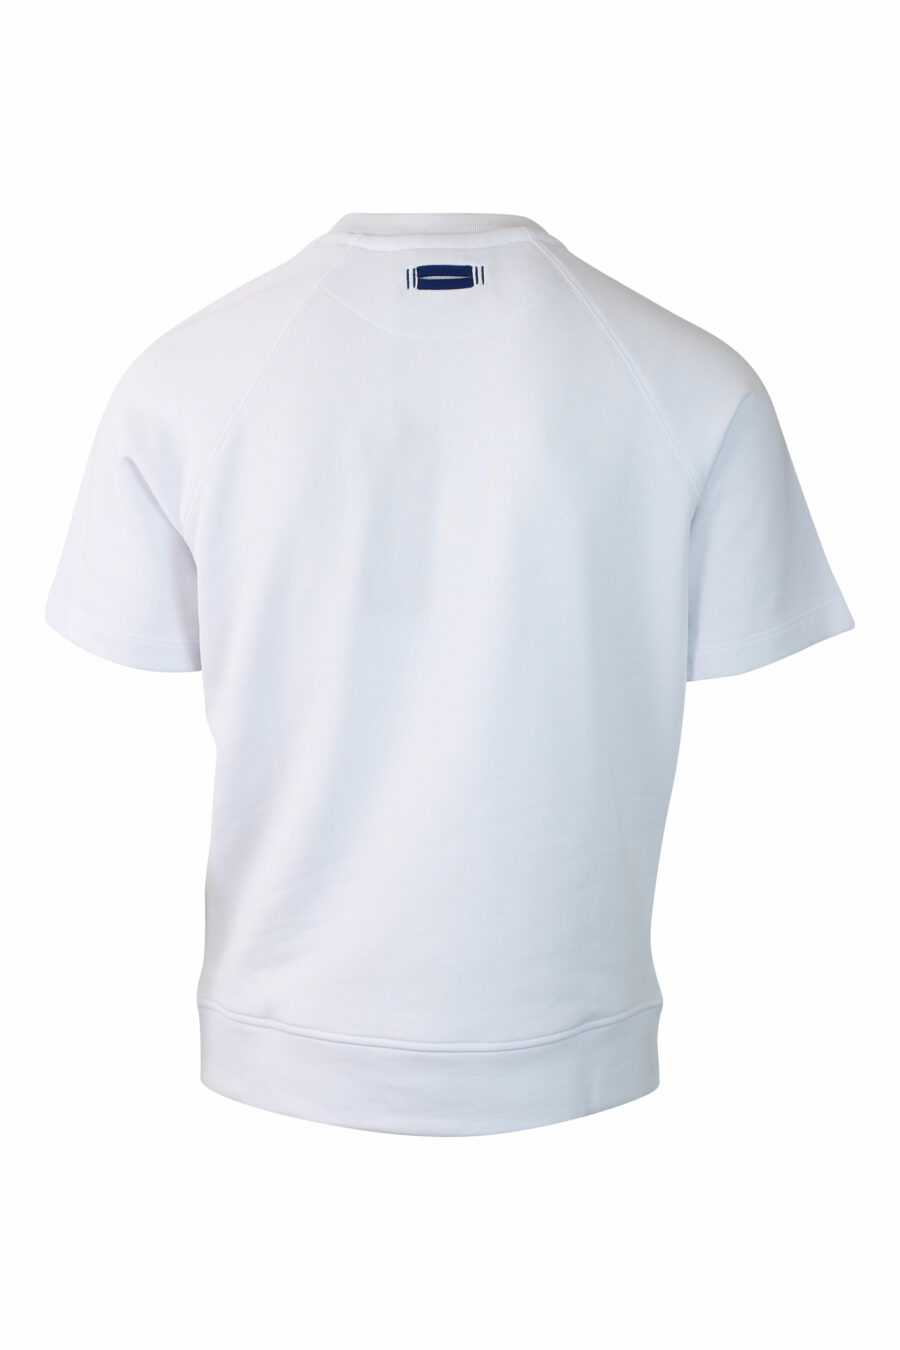 Camiseta blanca con minilogo escudo monocromático bordado - IMG 0126